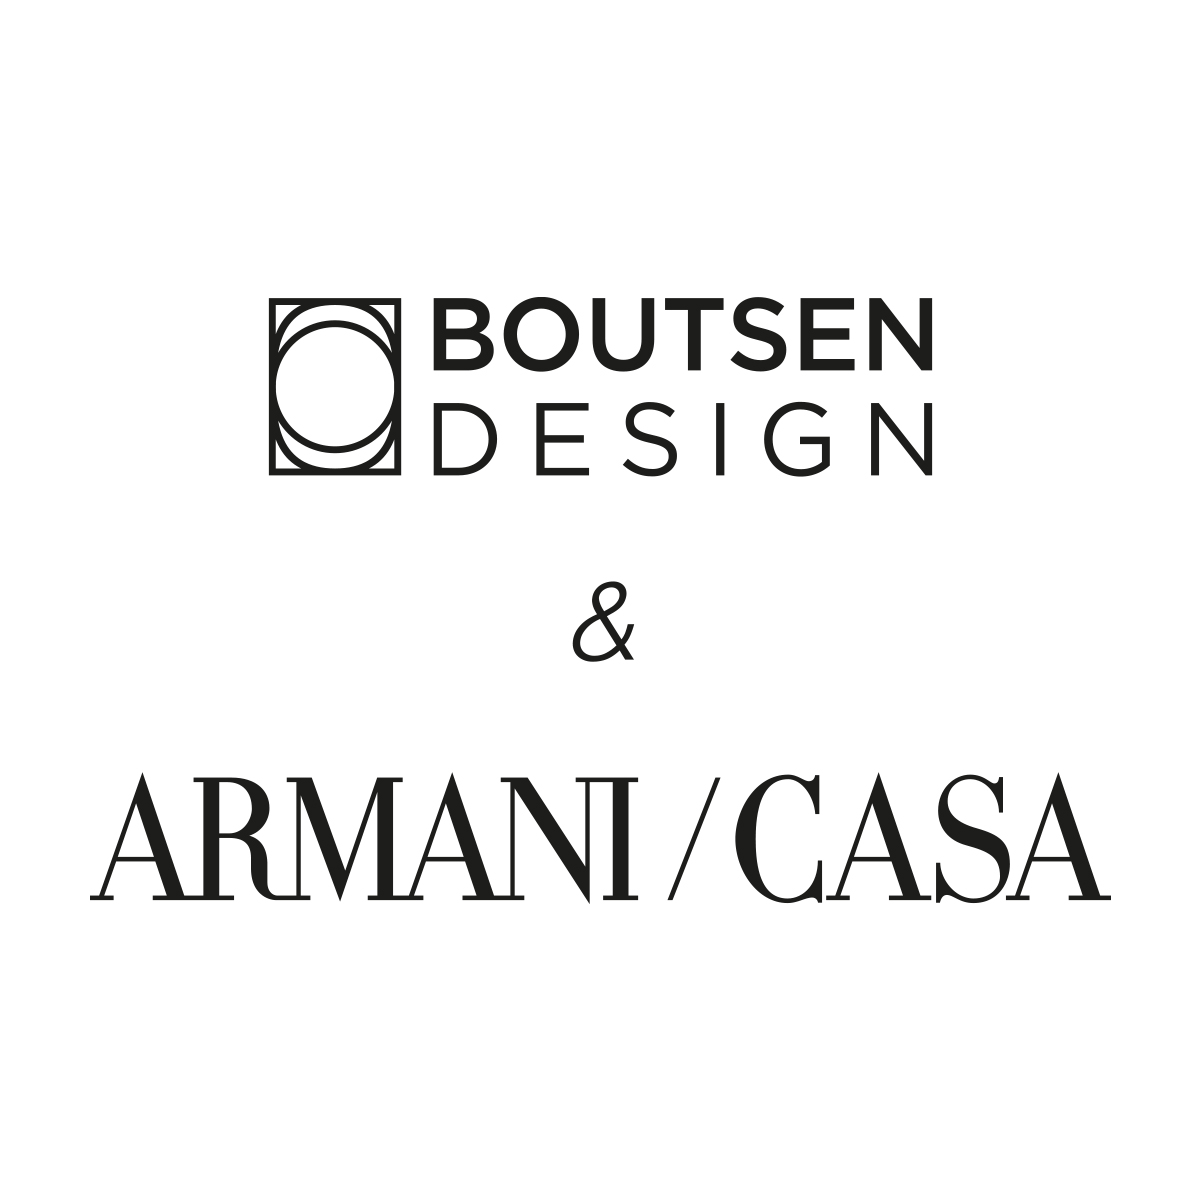 BOUTSEN DESIGN & ARMANI CASA